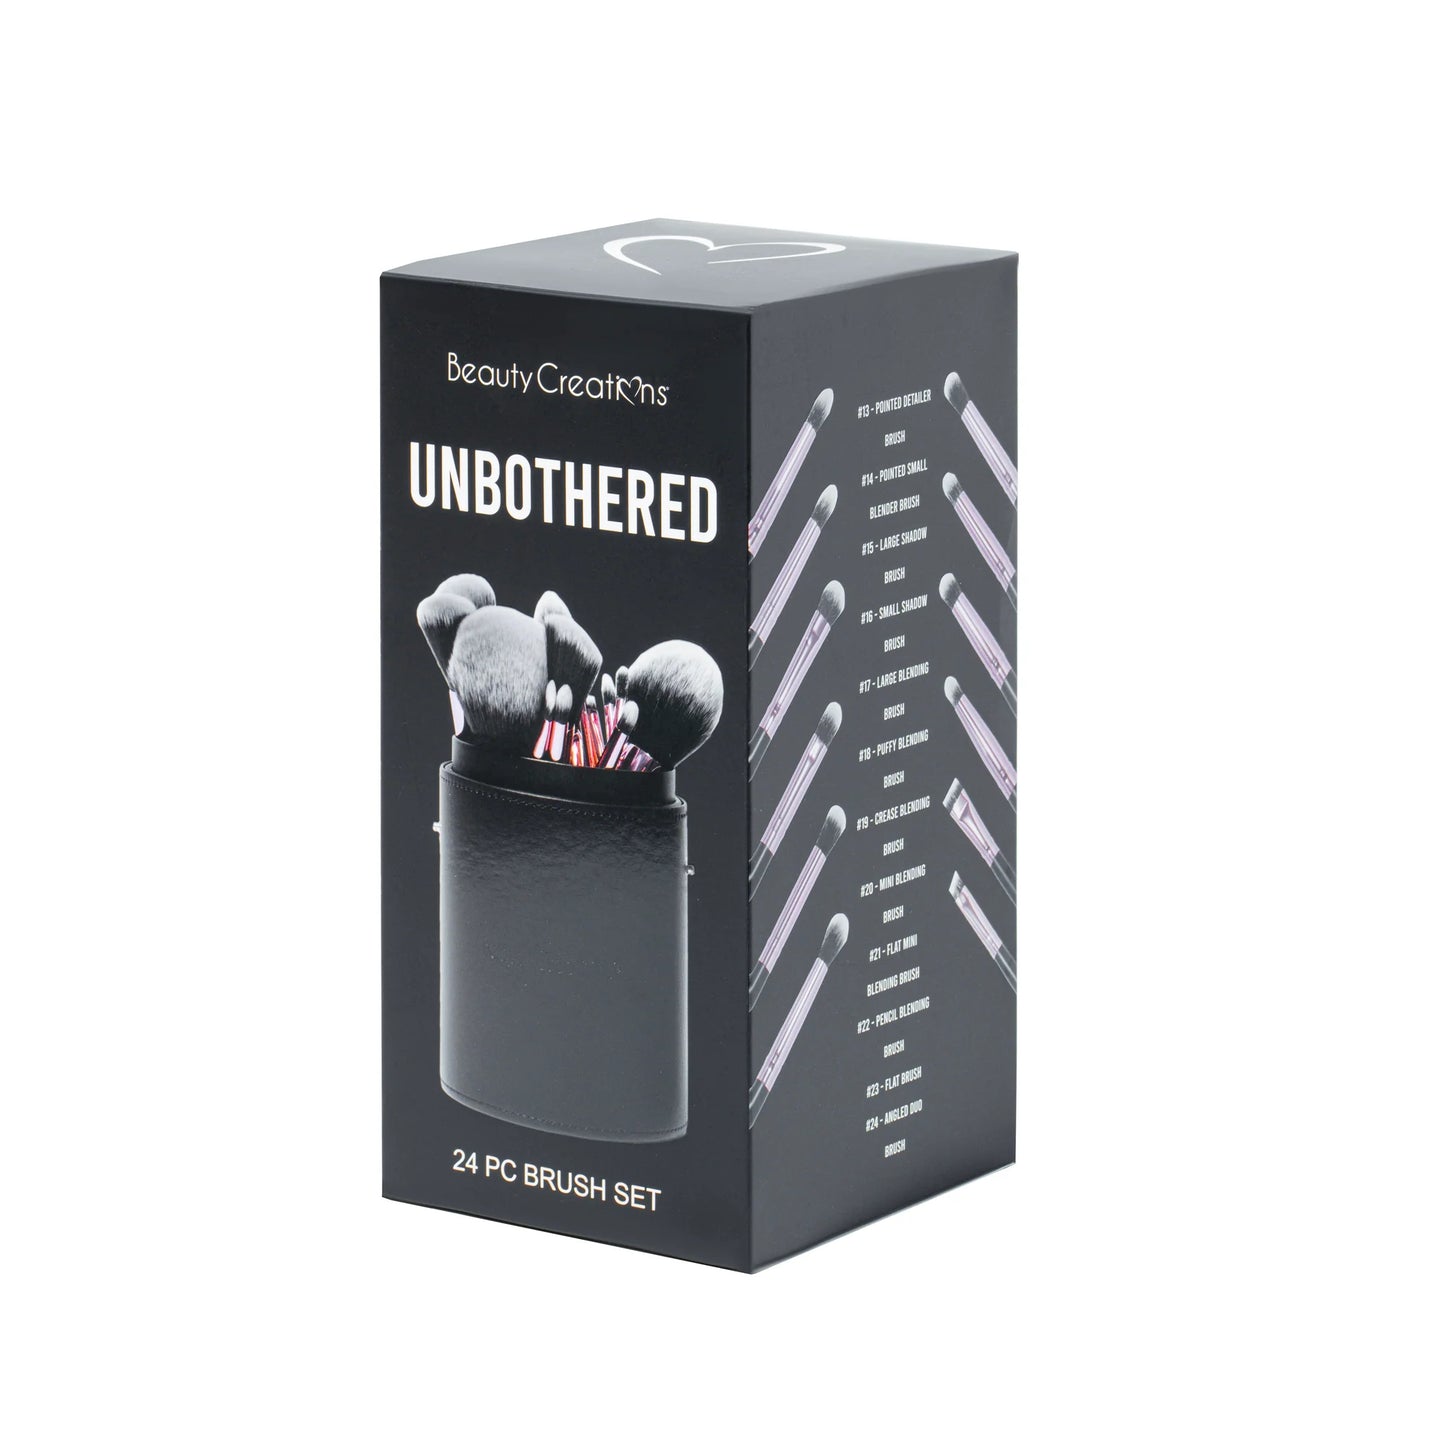 Unbothered 24PC Brush Set